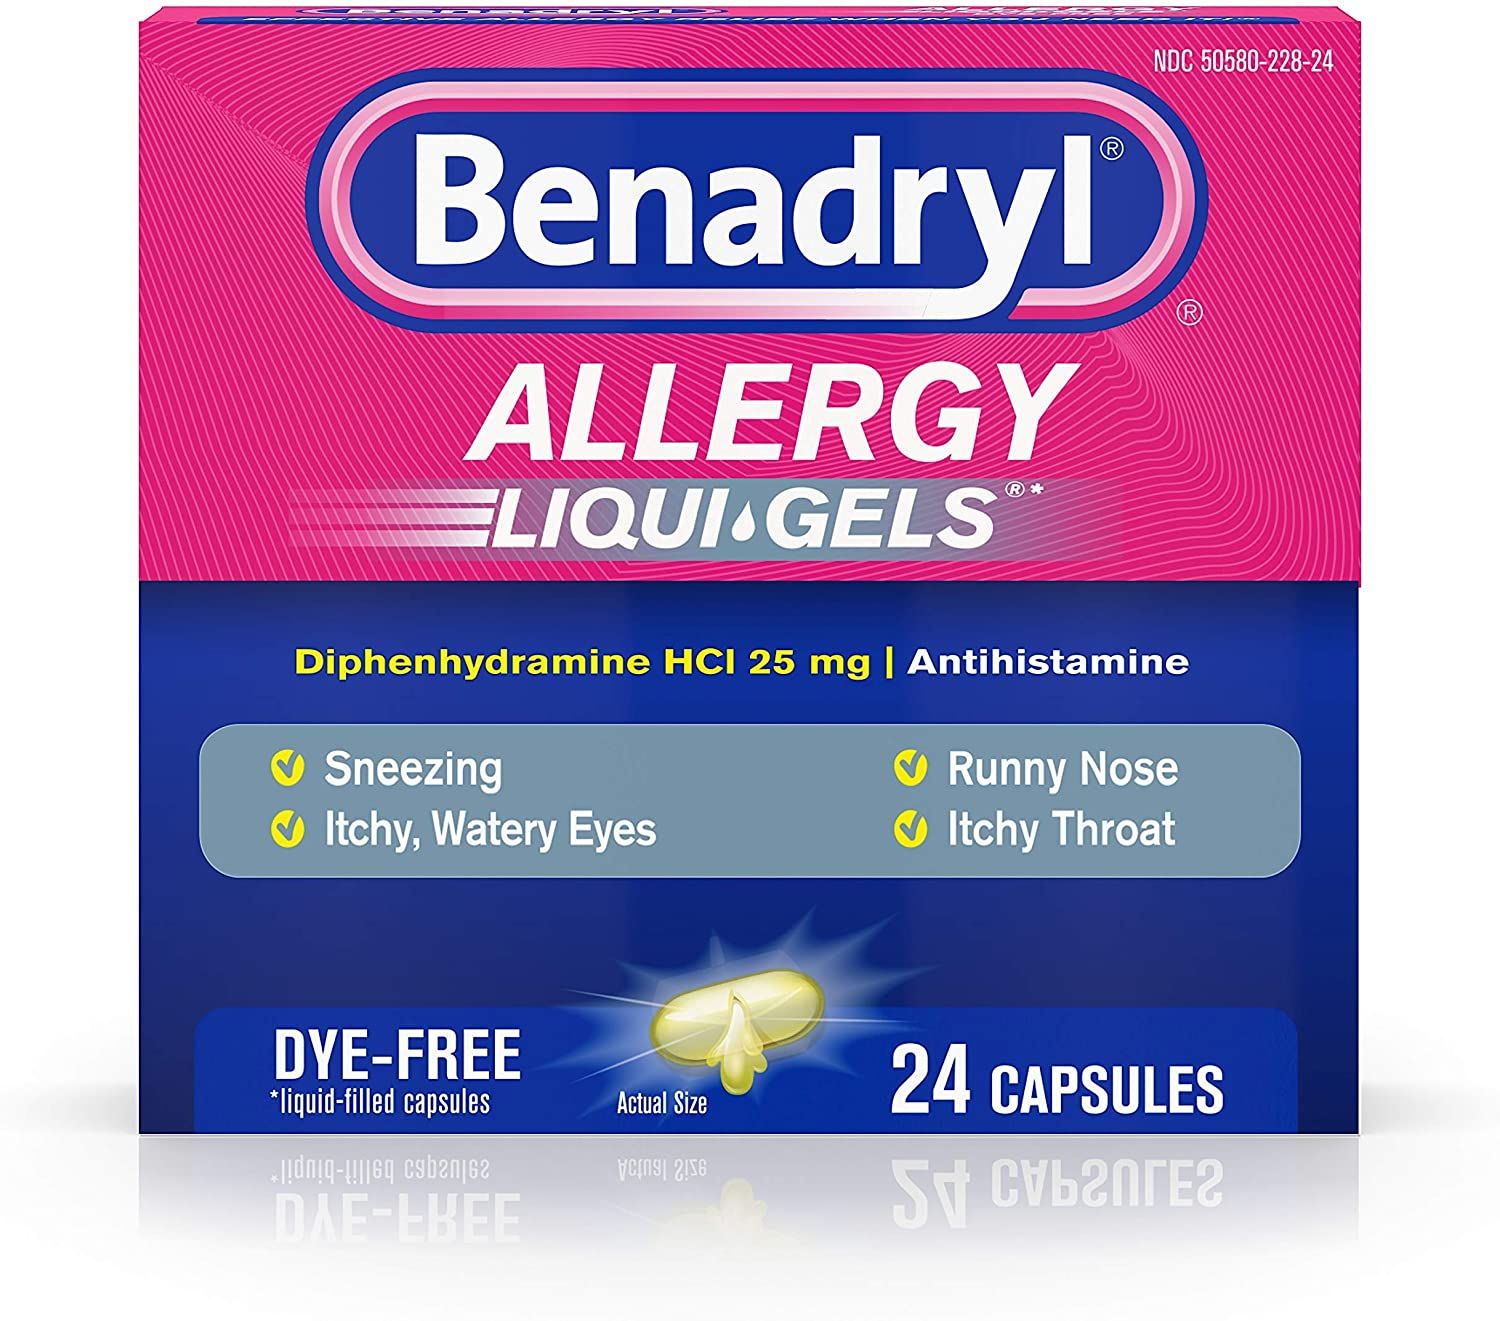 Benadryl Liqui-Gels Antihistamine Allergy Medicine - 24 ct